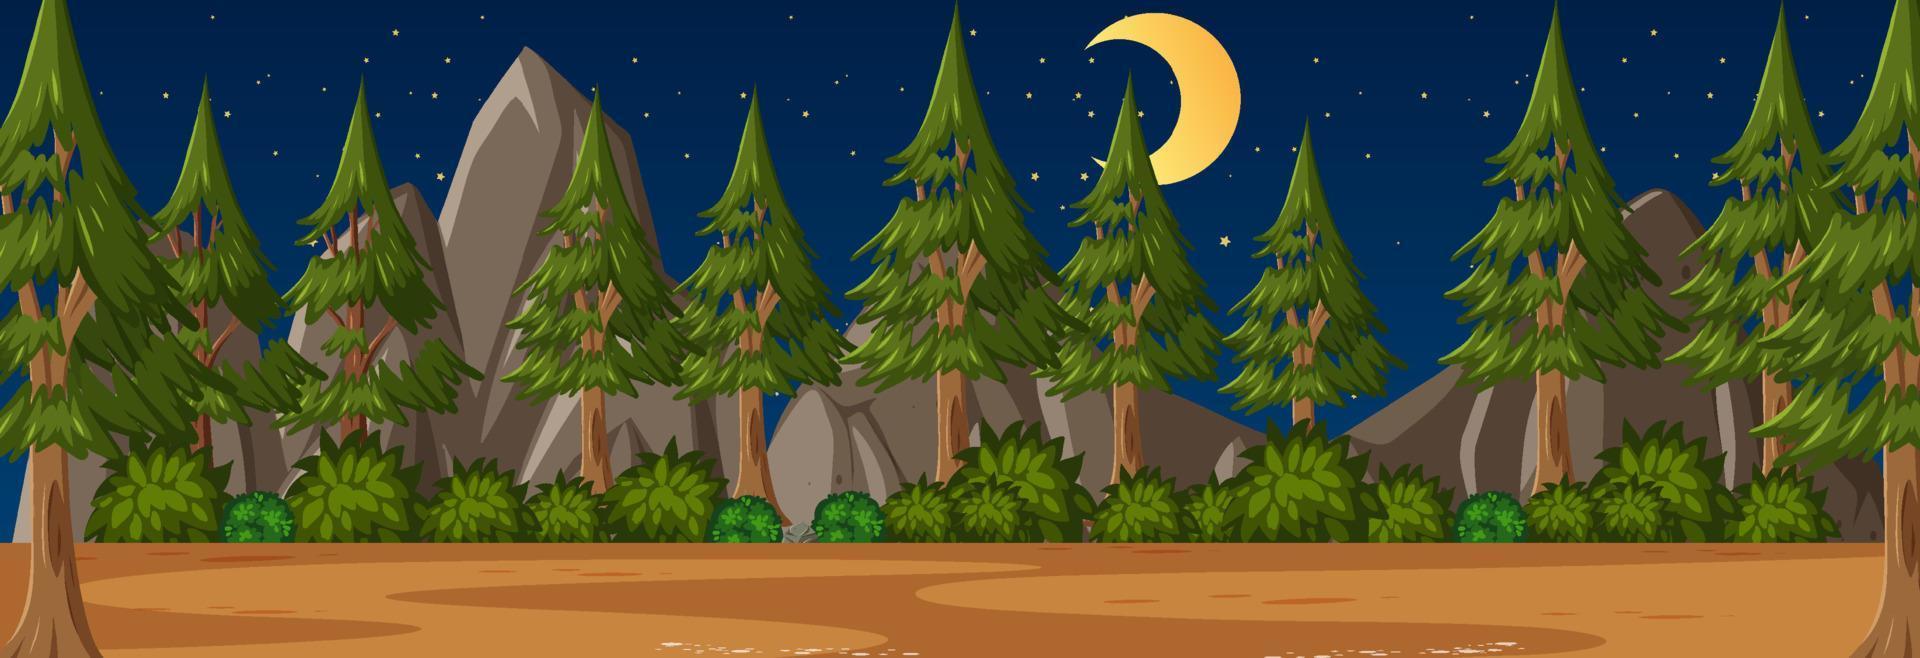 scena orizzontale della foresta di notte con molti pini sullo sfondo vettore